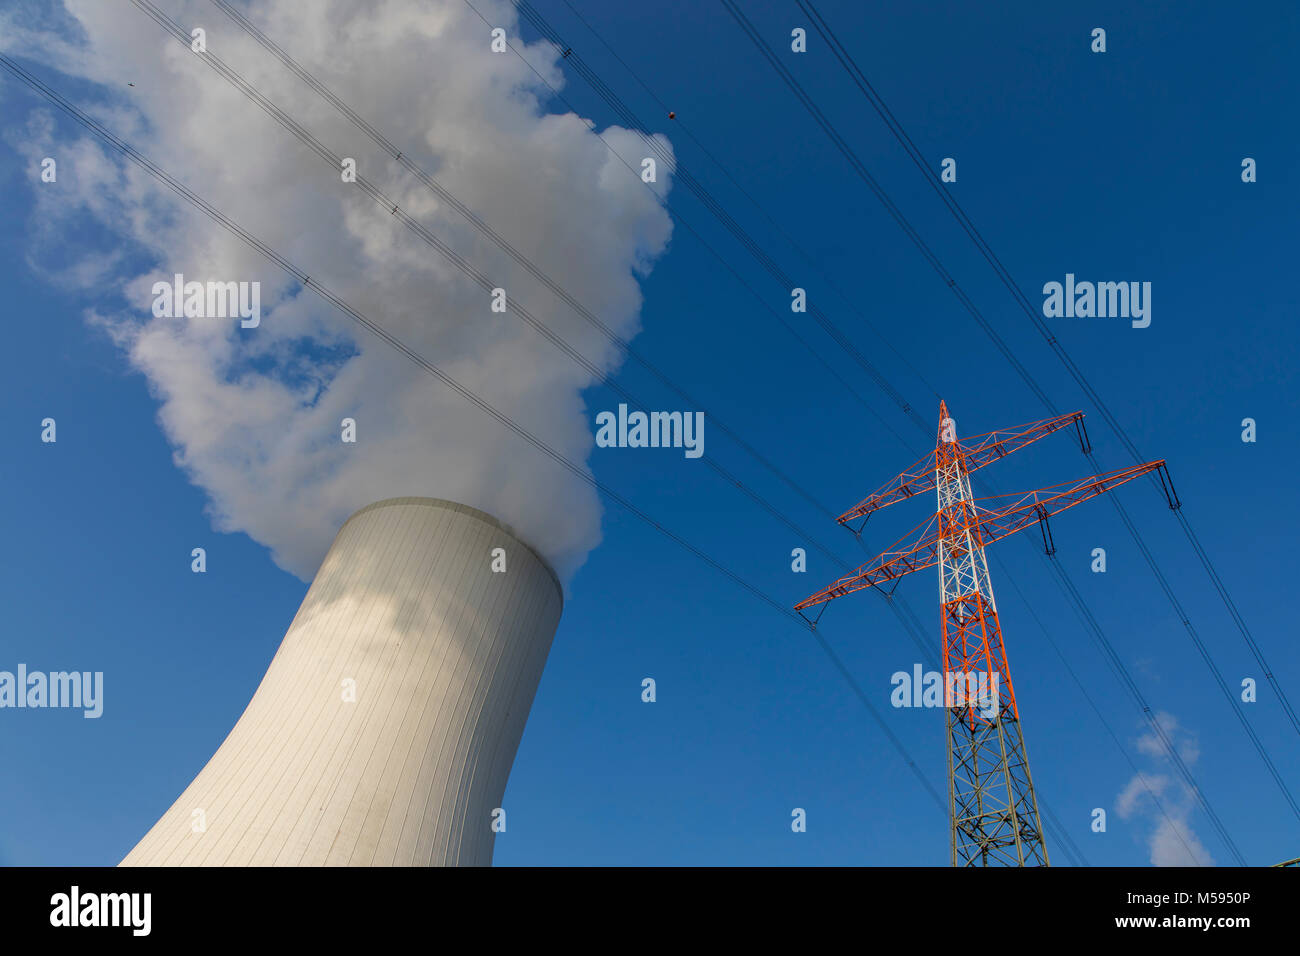 Kühlturm des Kohlekraftwerk Duisburg-Walsum von der STEAG und EVN AG, 181 Meter hoch, Wasserdampf, Cloud, Power Transmission Line betrieben, Mast Stockfoto